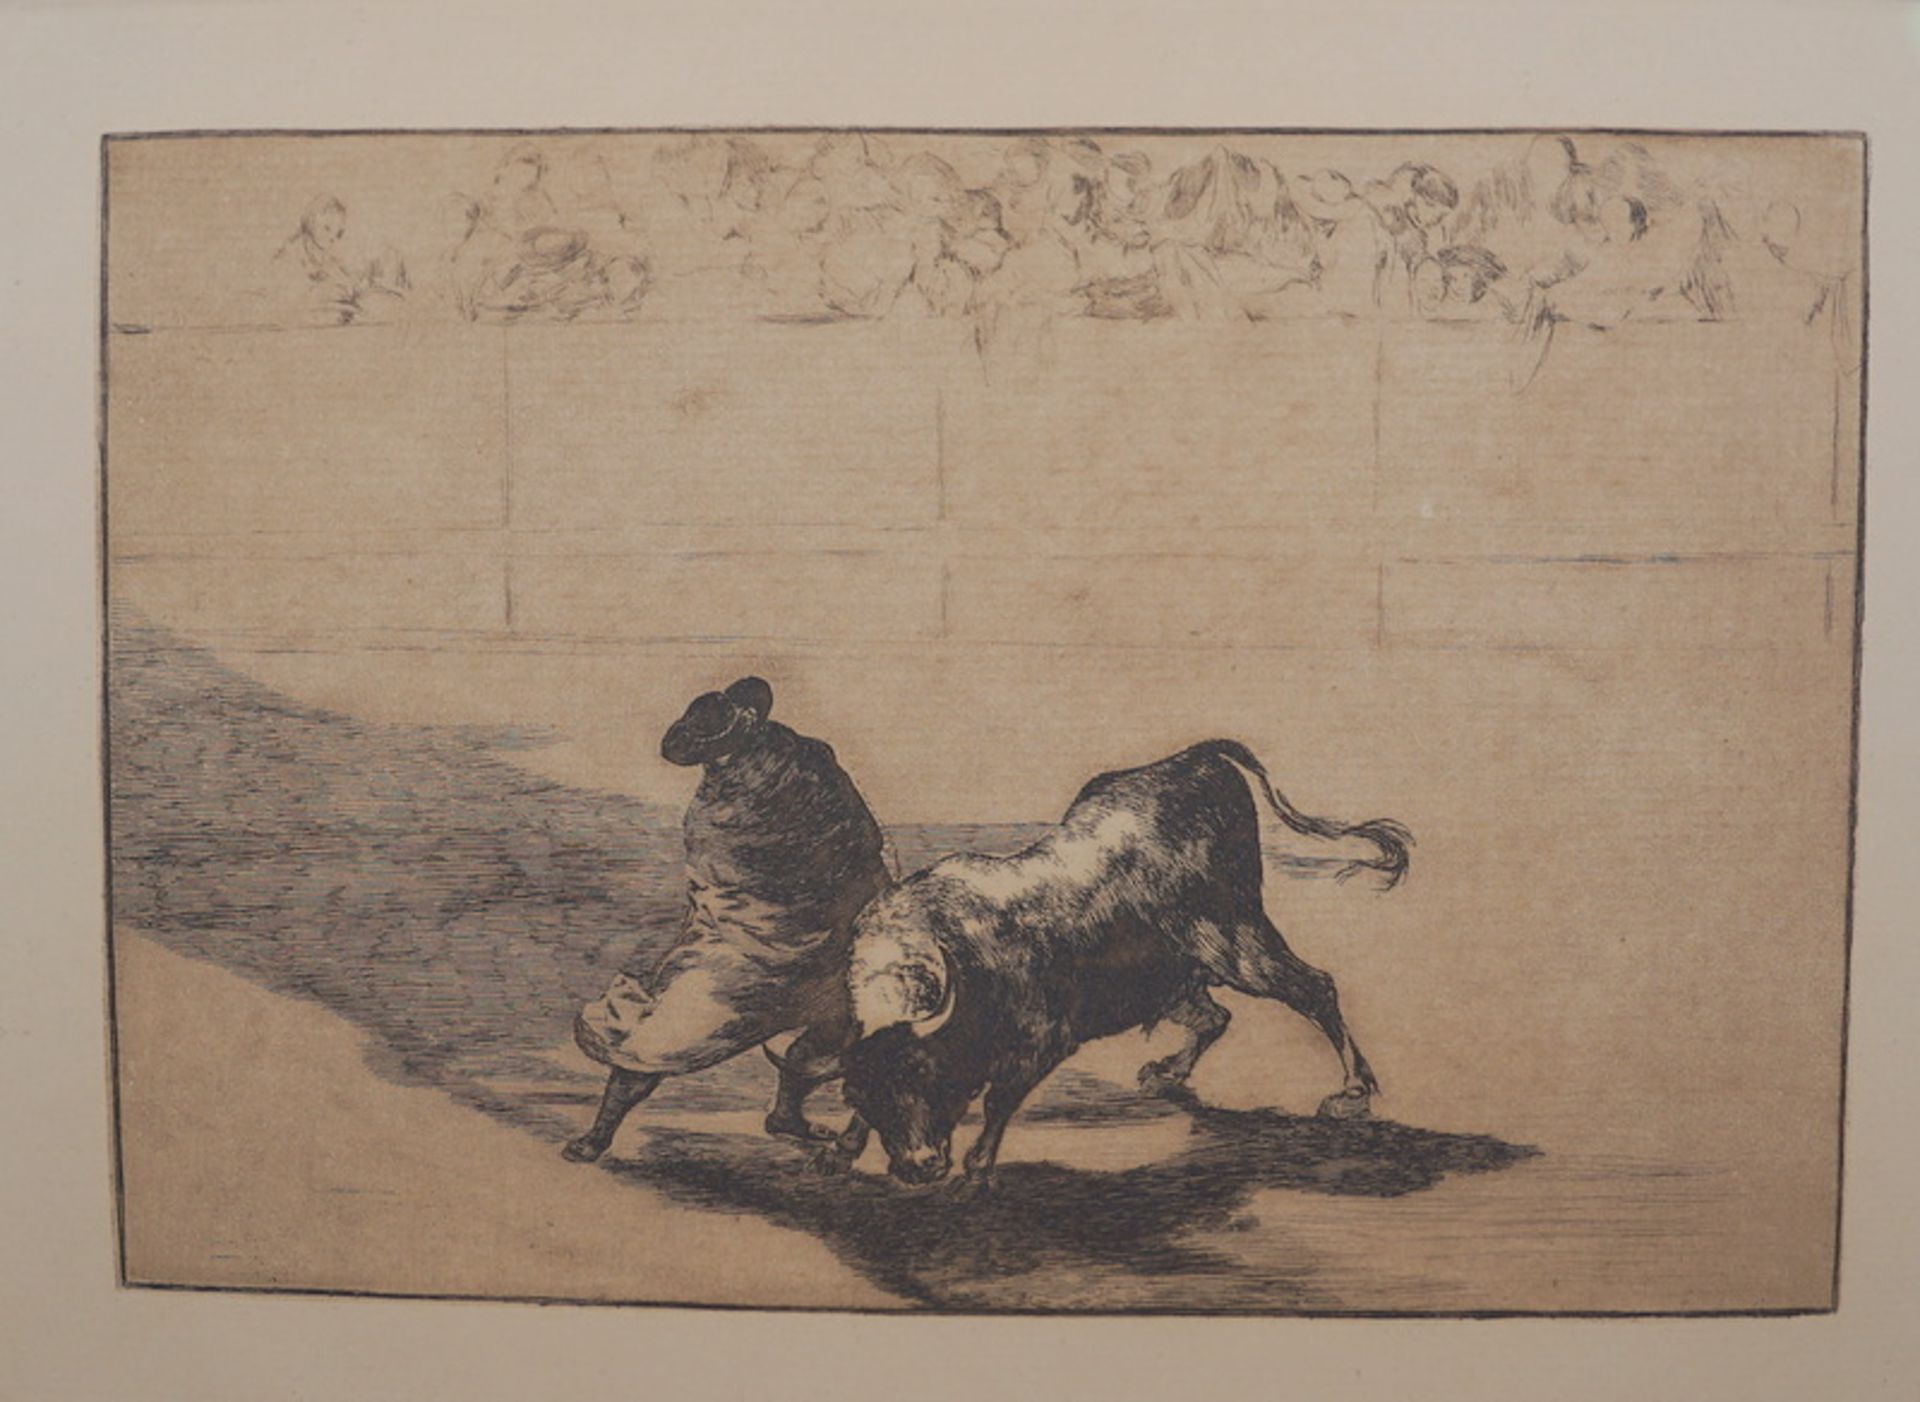 Goya y Lucientes, Francisco José de: Stierkampfszene aus La Tauromaquia 1814-16 Nr .14